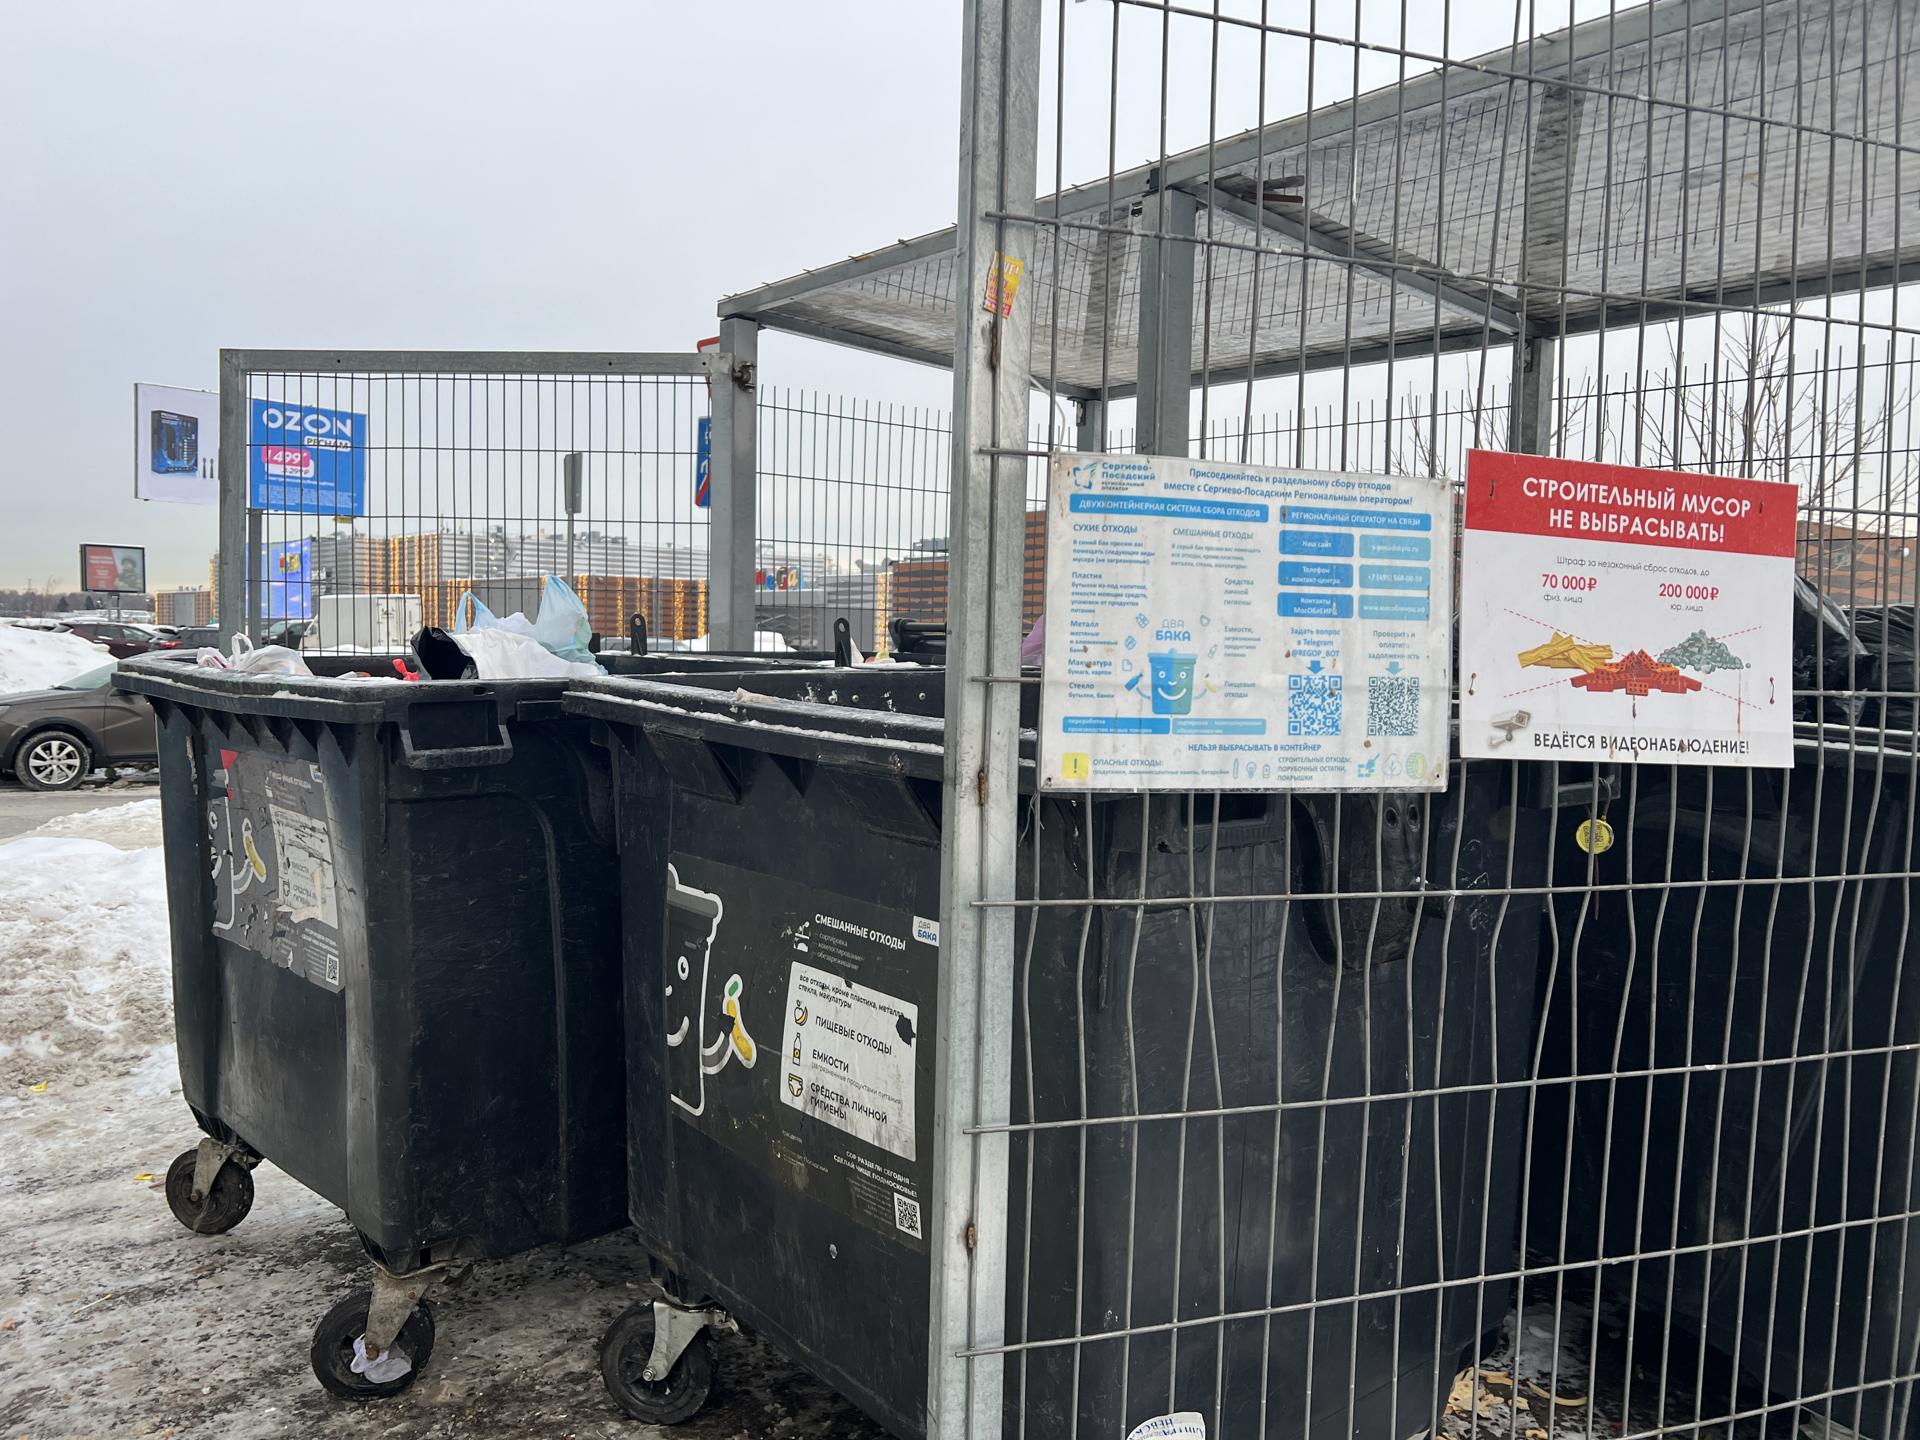 В Химках ликвидировали навалы мусора на контейнерной площадке на проспекте Мельникова